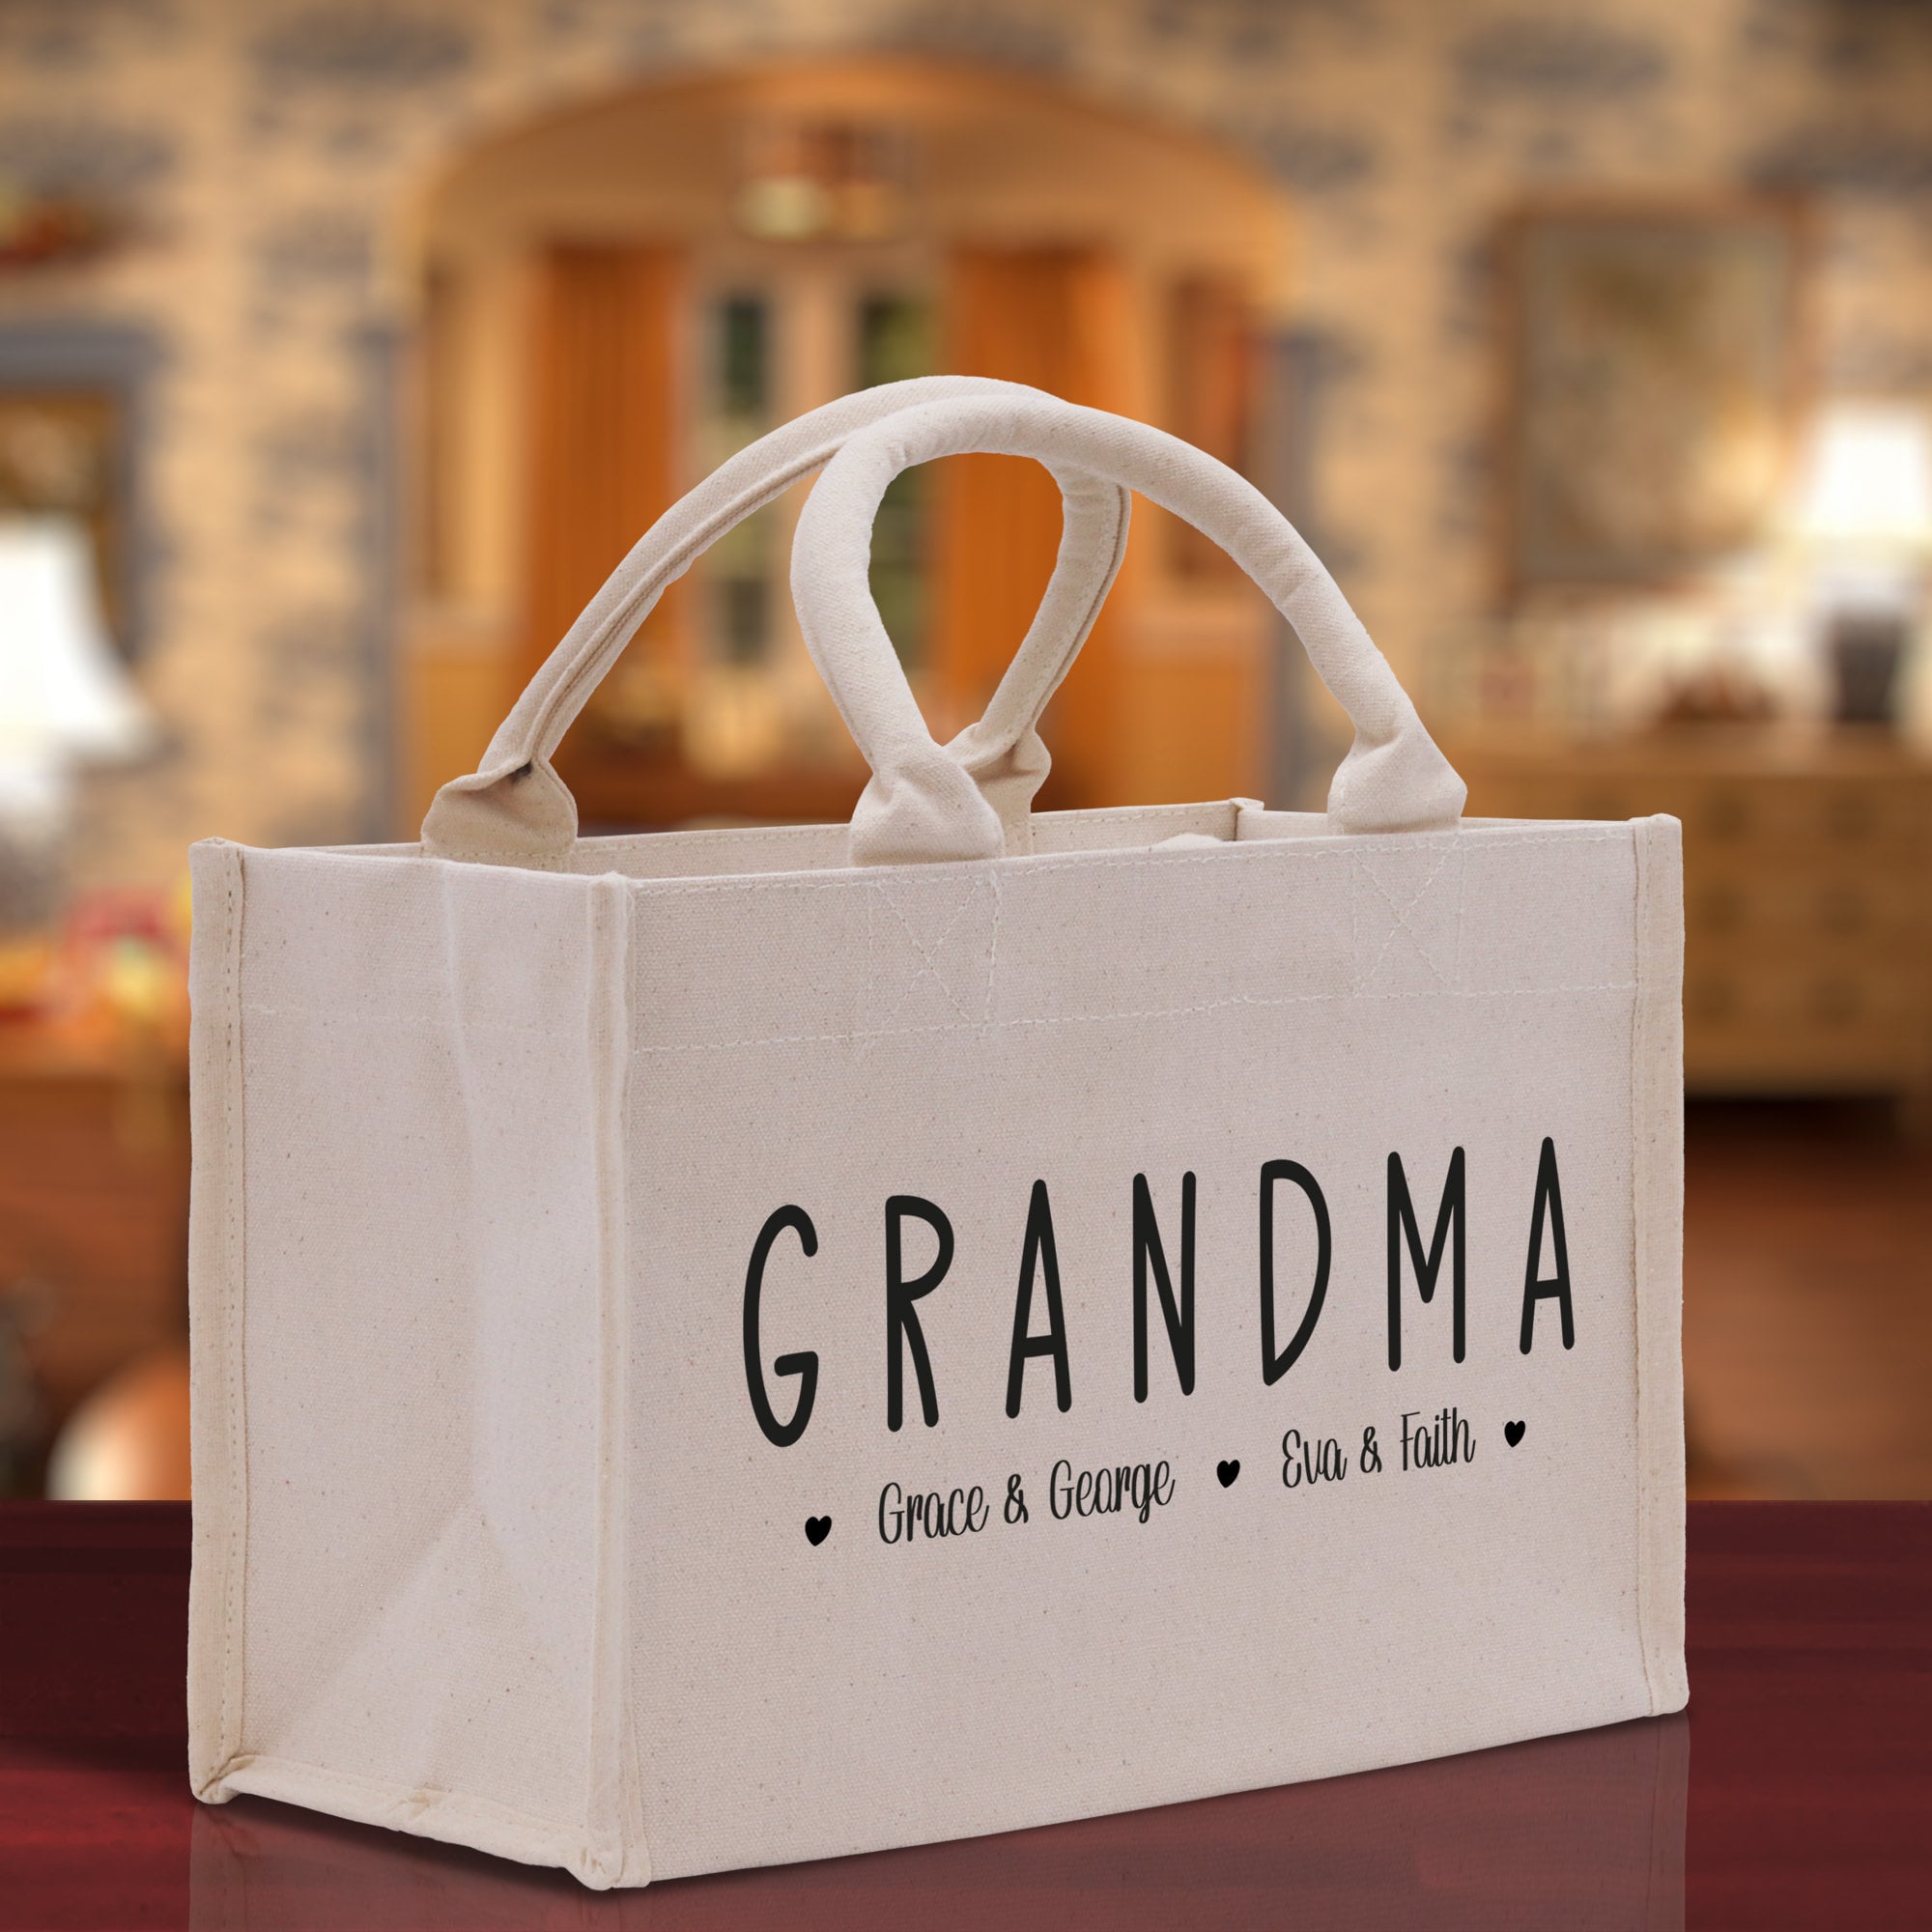 Grandma Grandchild Kids Names Custom Grandma Tote Bag Grandma's Getaway Bag Personalized Grandma Gift Bag Shopping Bag Mother Day Gift